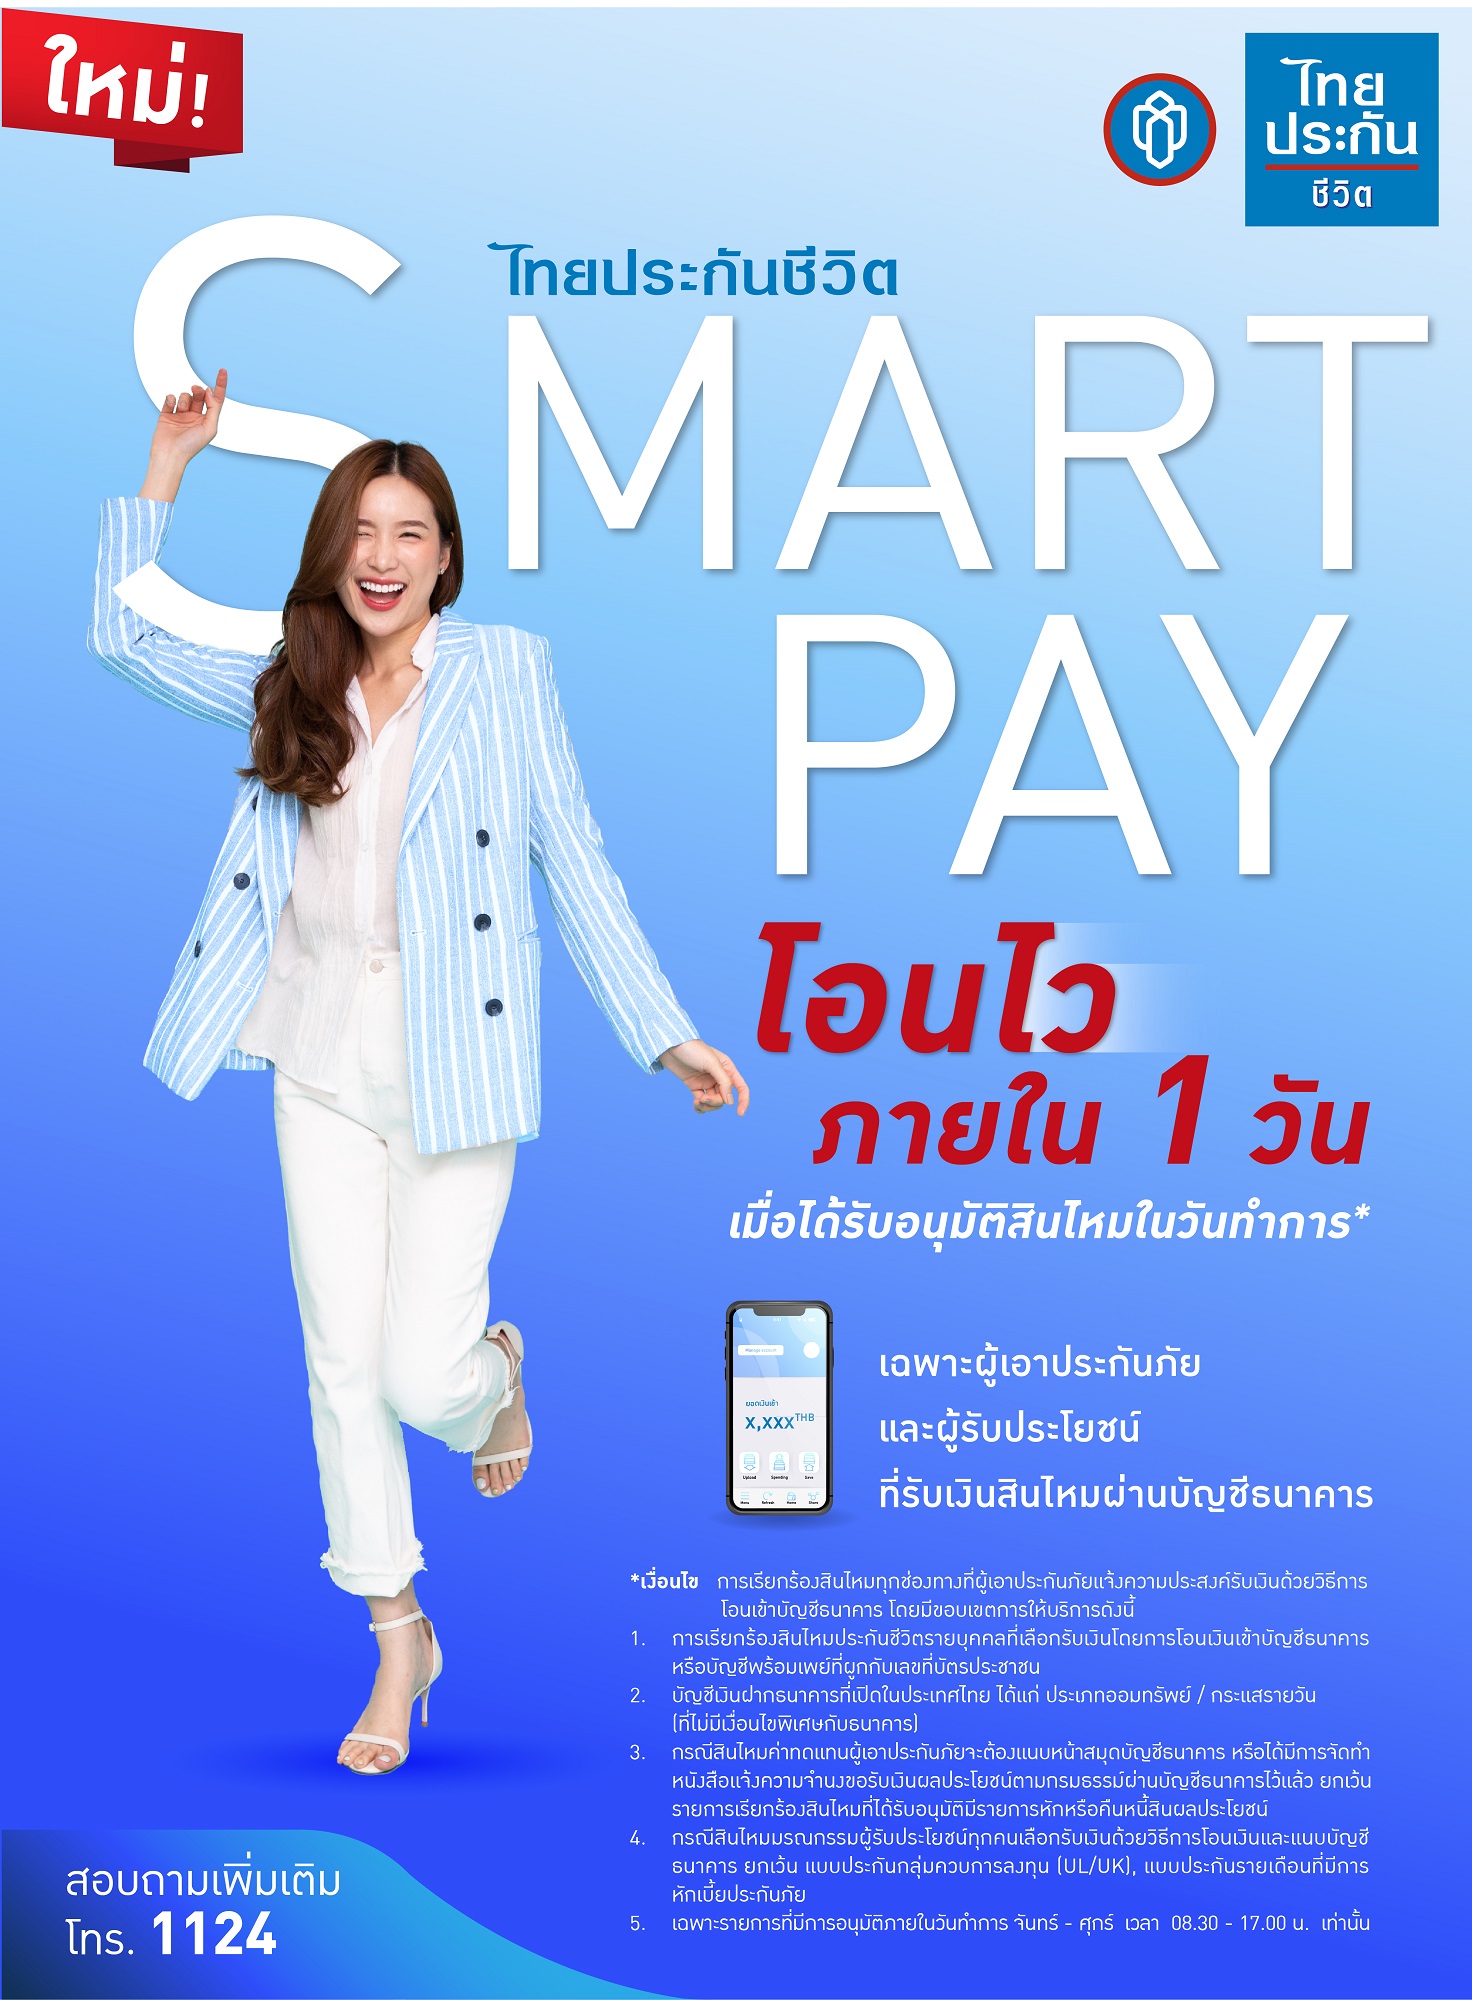 ไทยประกันชีวิตเพิ่มบริการ “ไทยประกันชีวิต Smart Pay”